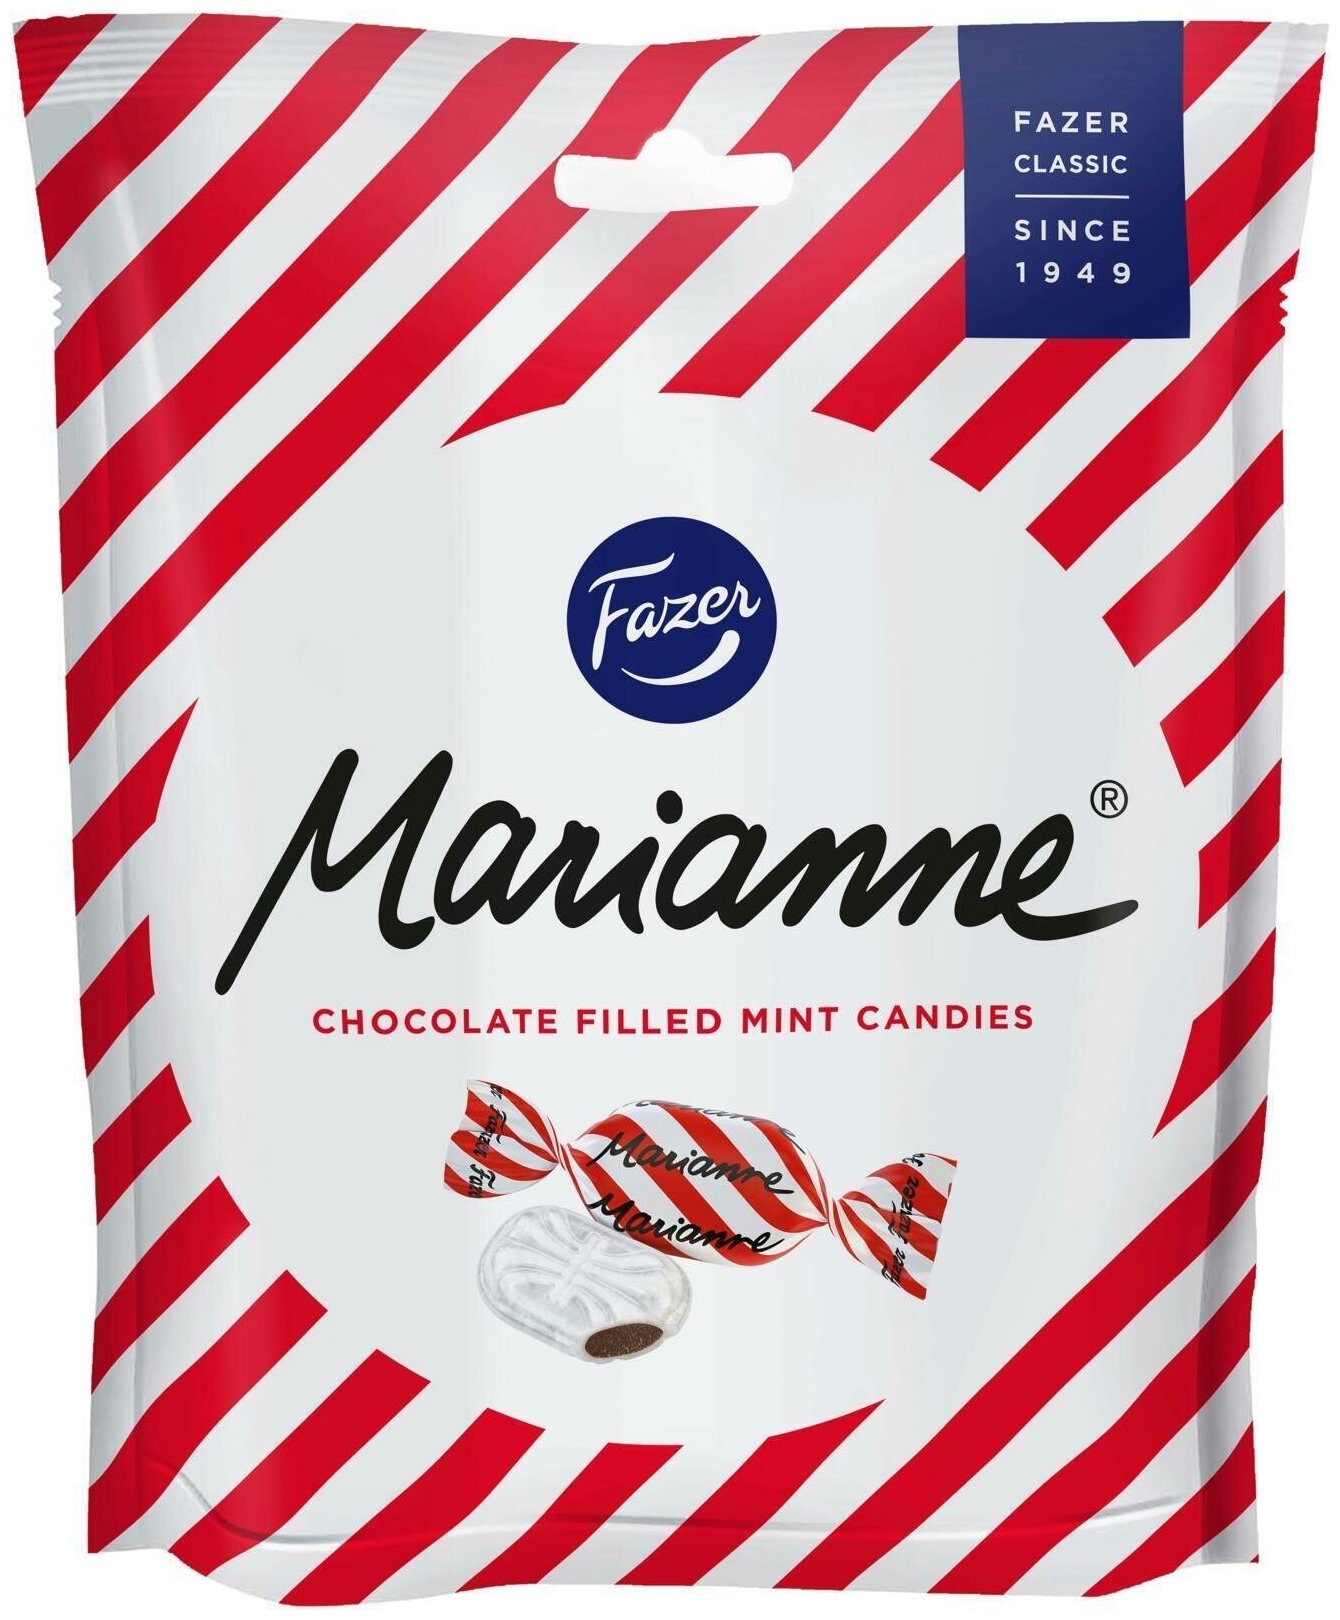 Fazer Marianne, карамельные конфеты со вкусом мяты и шоколада 220 г, в подарочной упаковке, вдохновение, сладкие подарки.